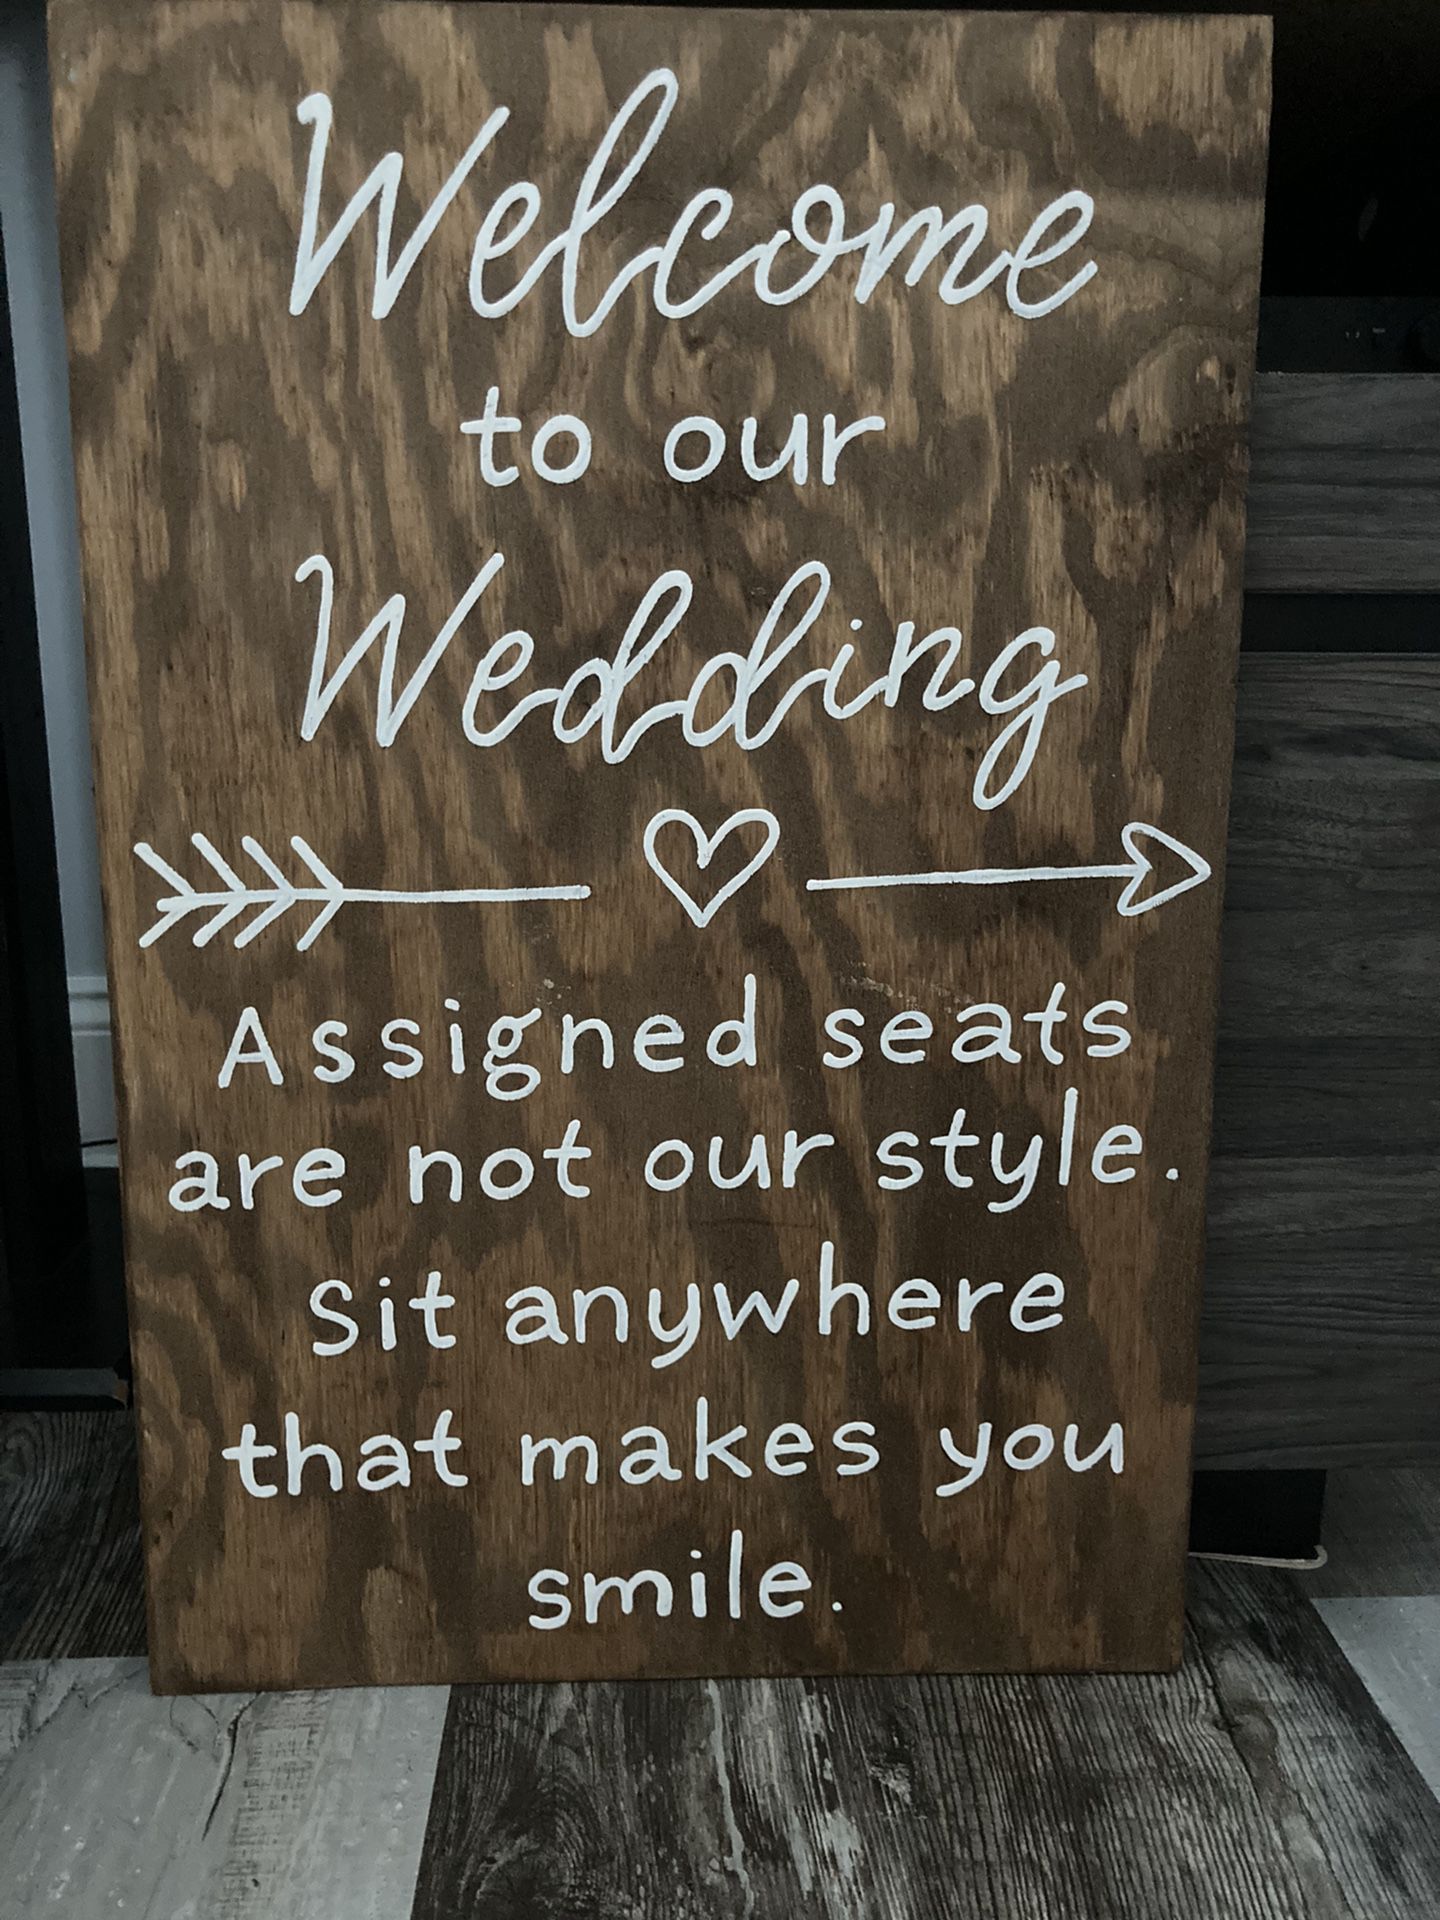 Wedding Ceremony Sign